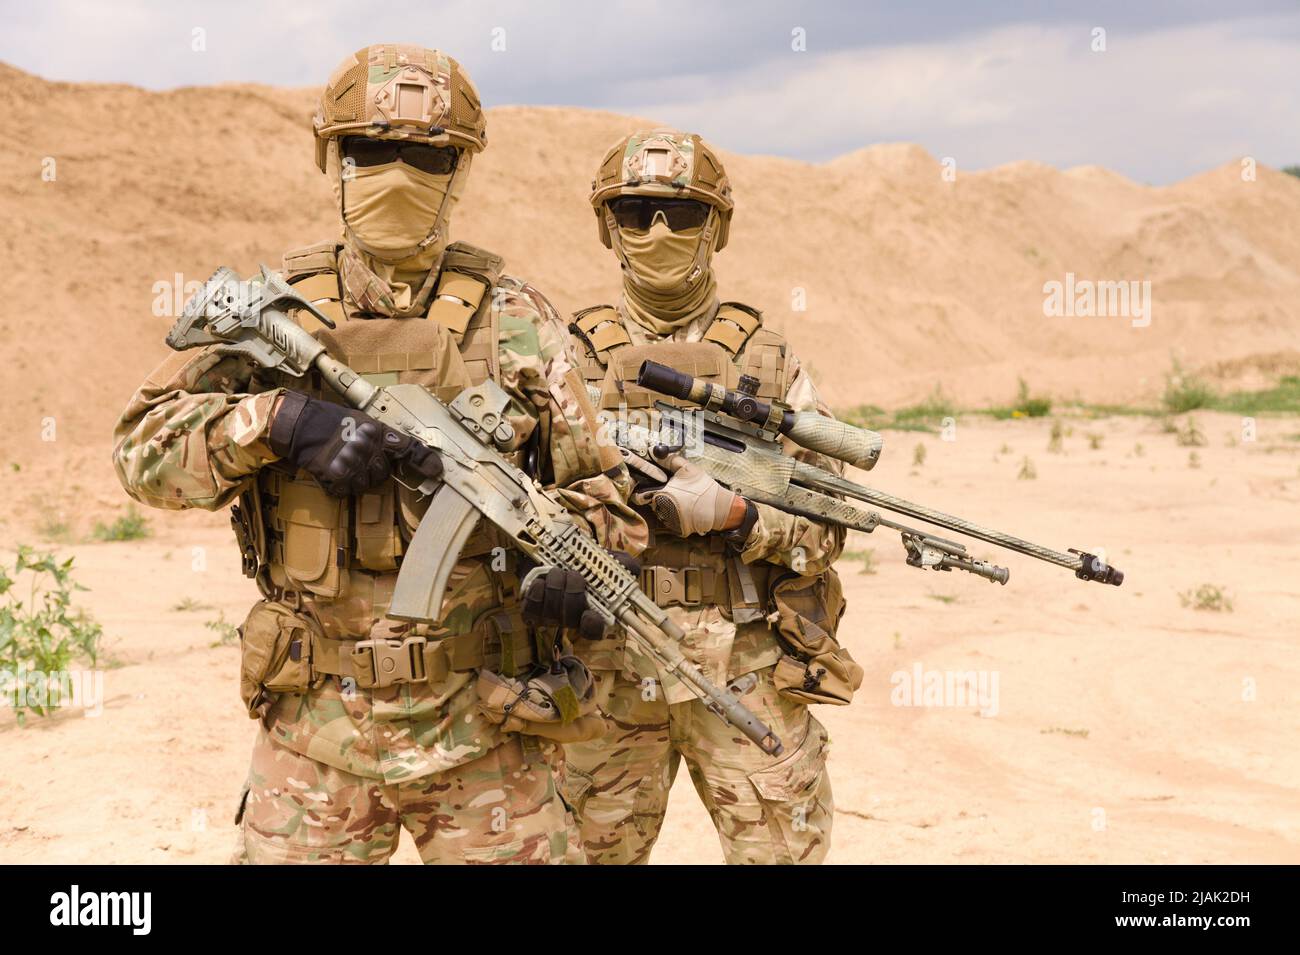 Portrait de deux soldats des forces spéciales pendant une opération militaire dans le désert. Banque D'Images